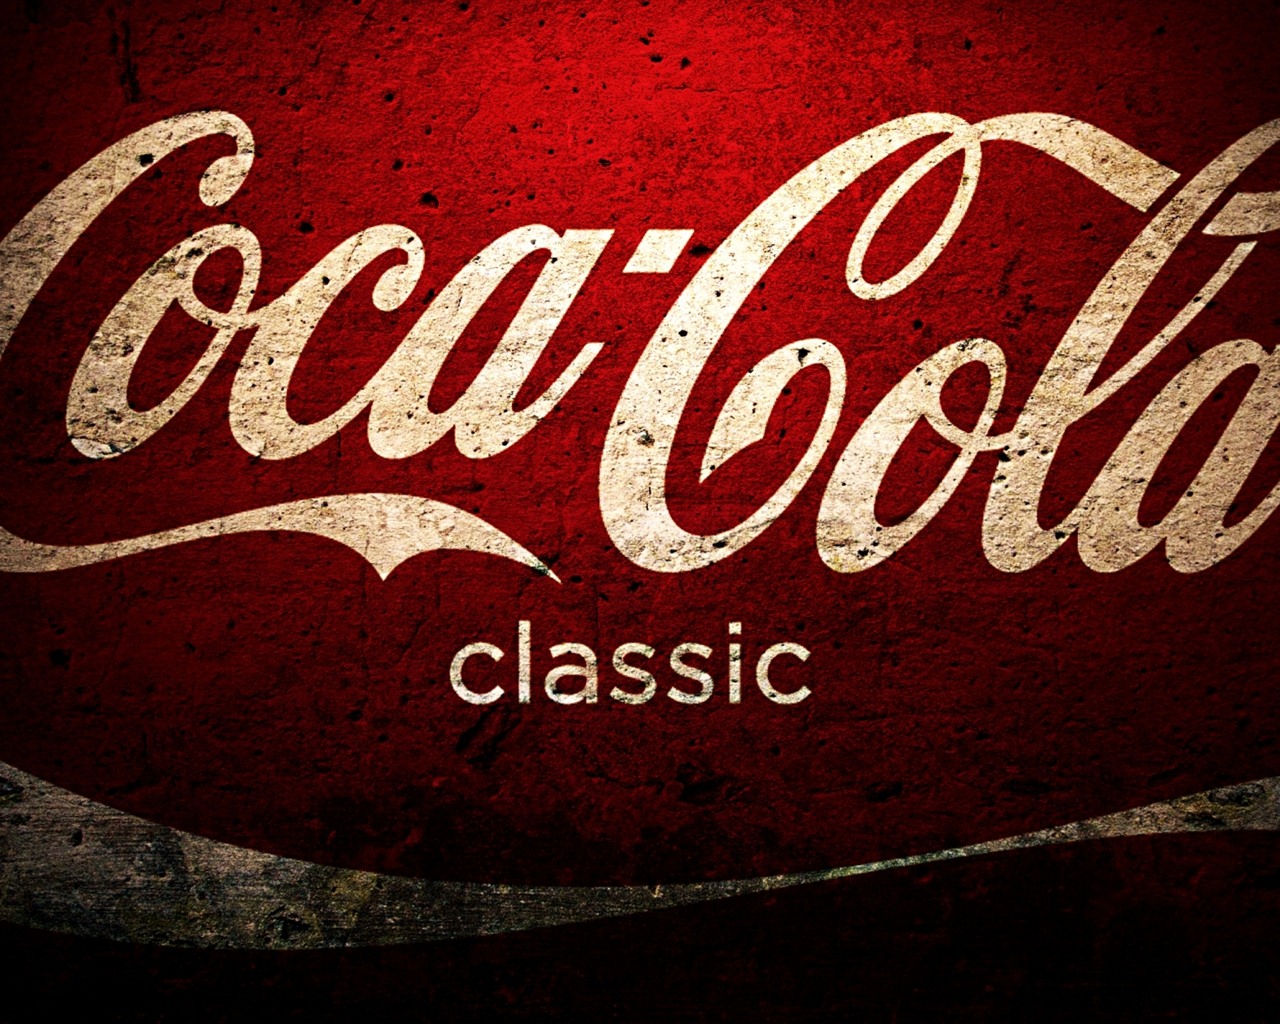 Coca-Cola beautiful ad wallpaper #25 - 1280x1024